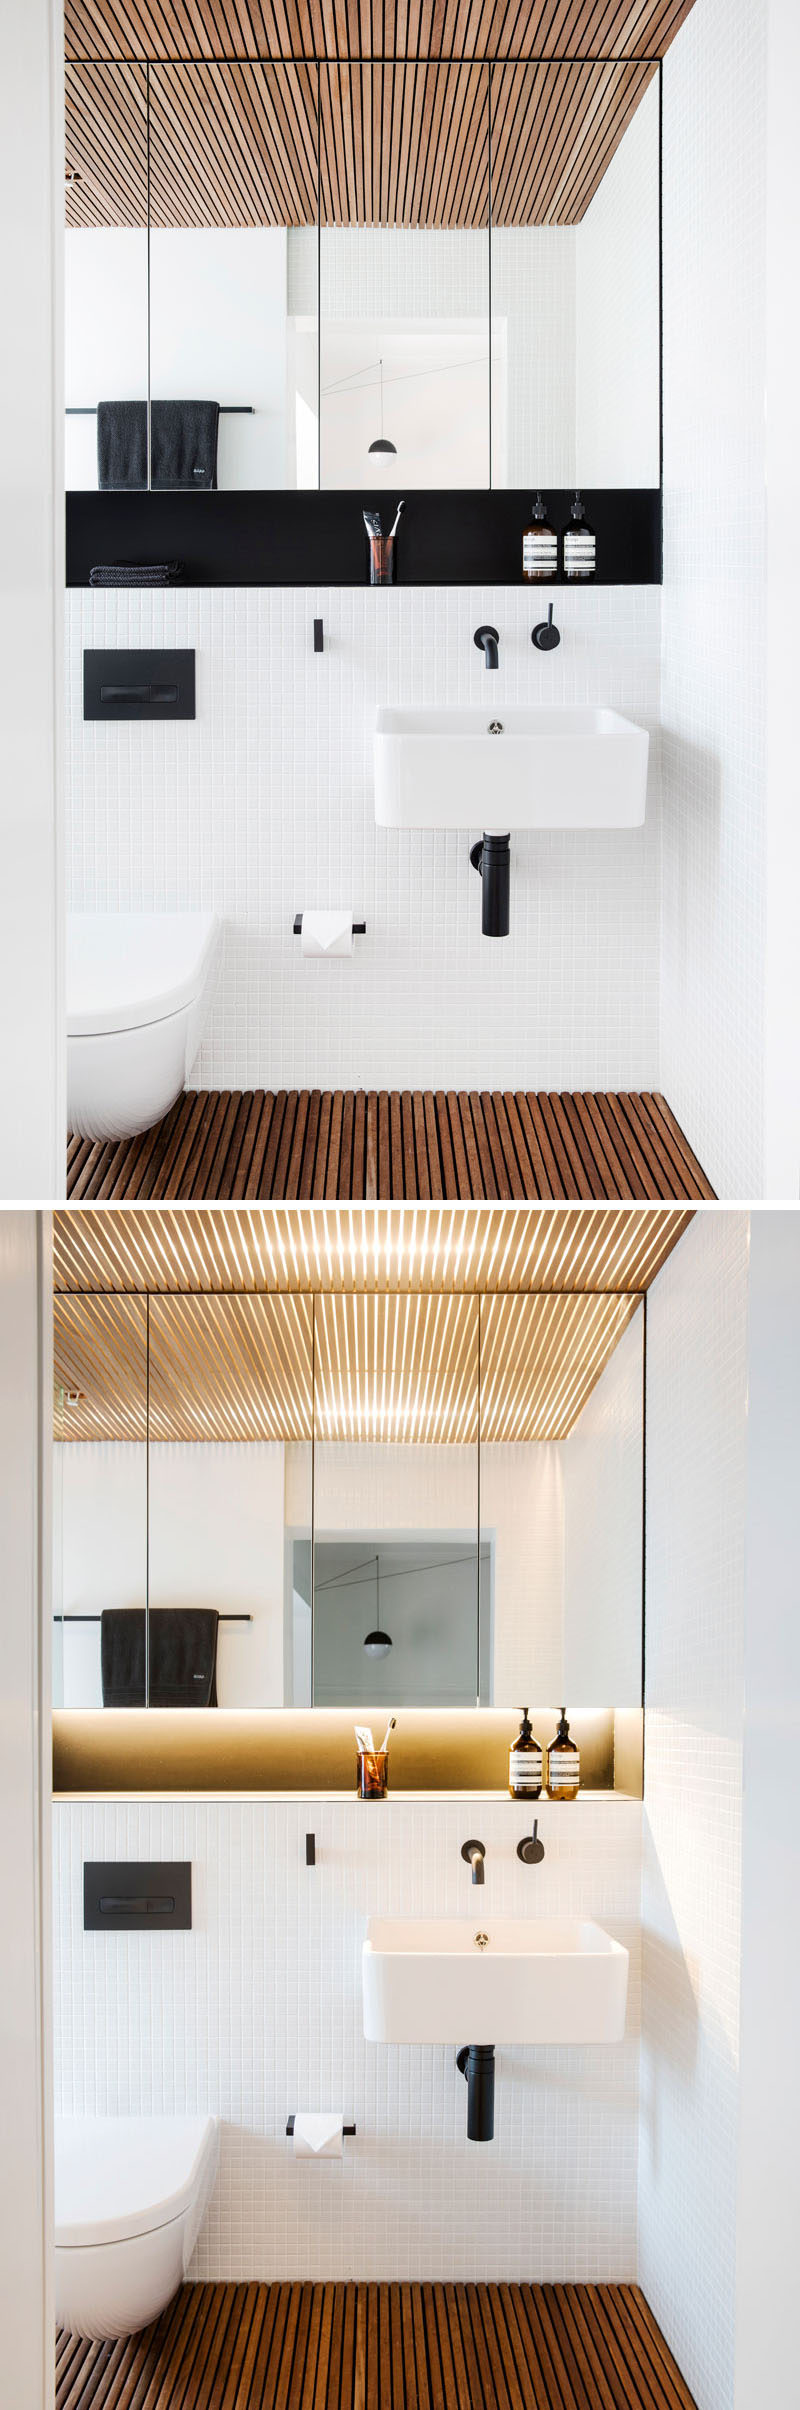 Это современная ванная комната дерева ламеля пол и потолок, чтобы вводит текстуру и осязание, в то время как белые плитки и большое зеркало поможет украсить пространство.